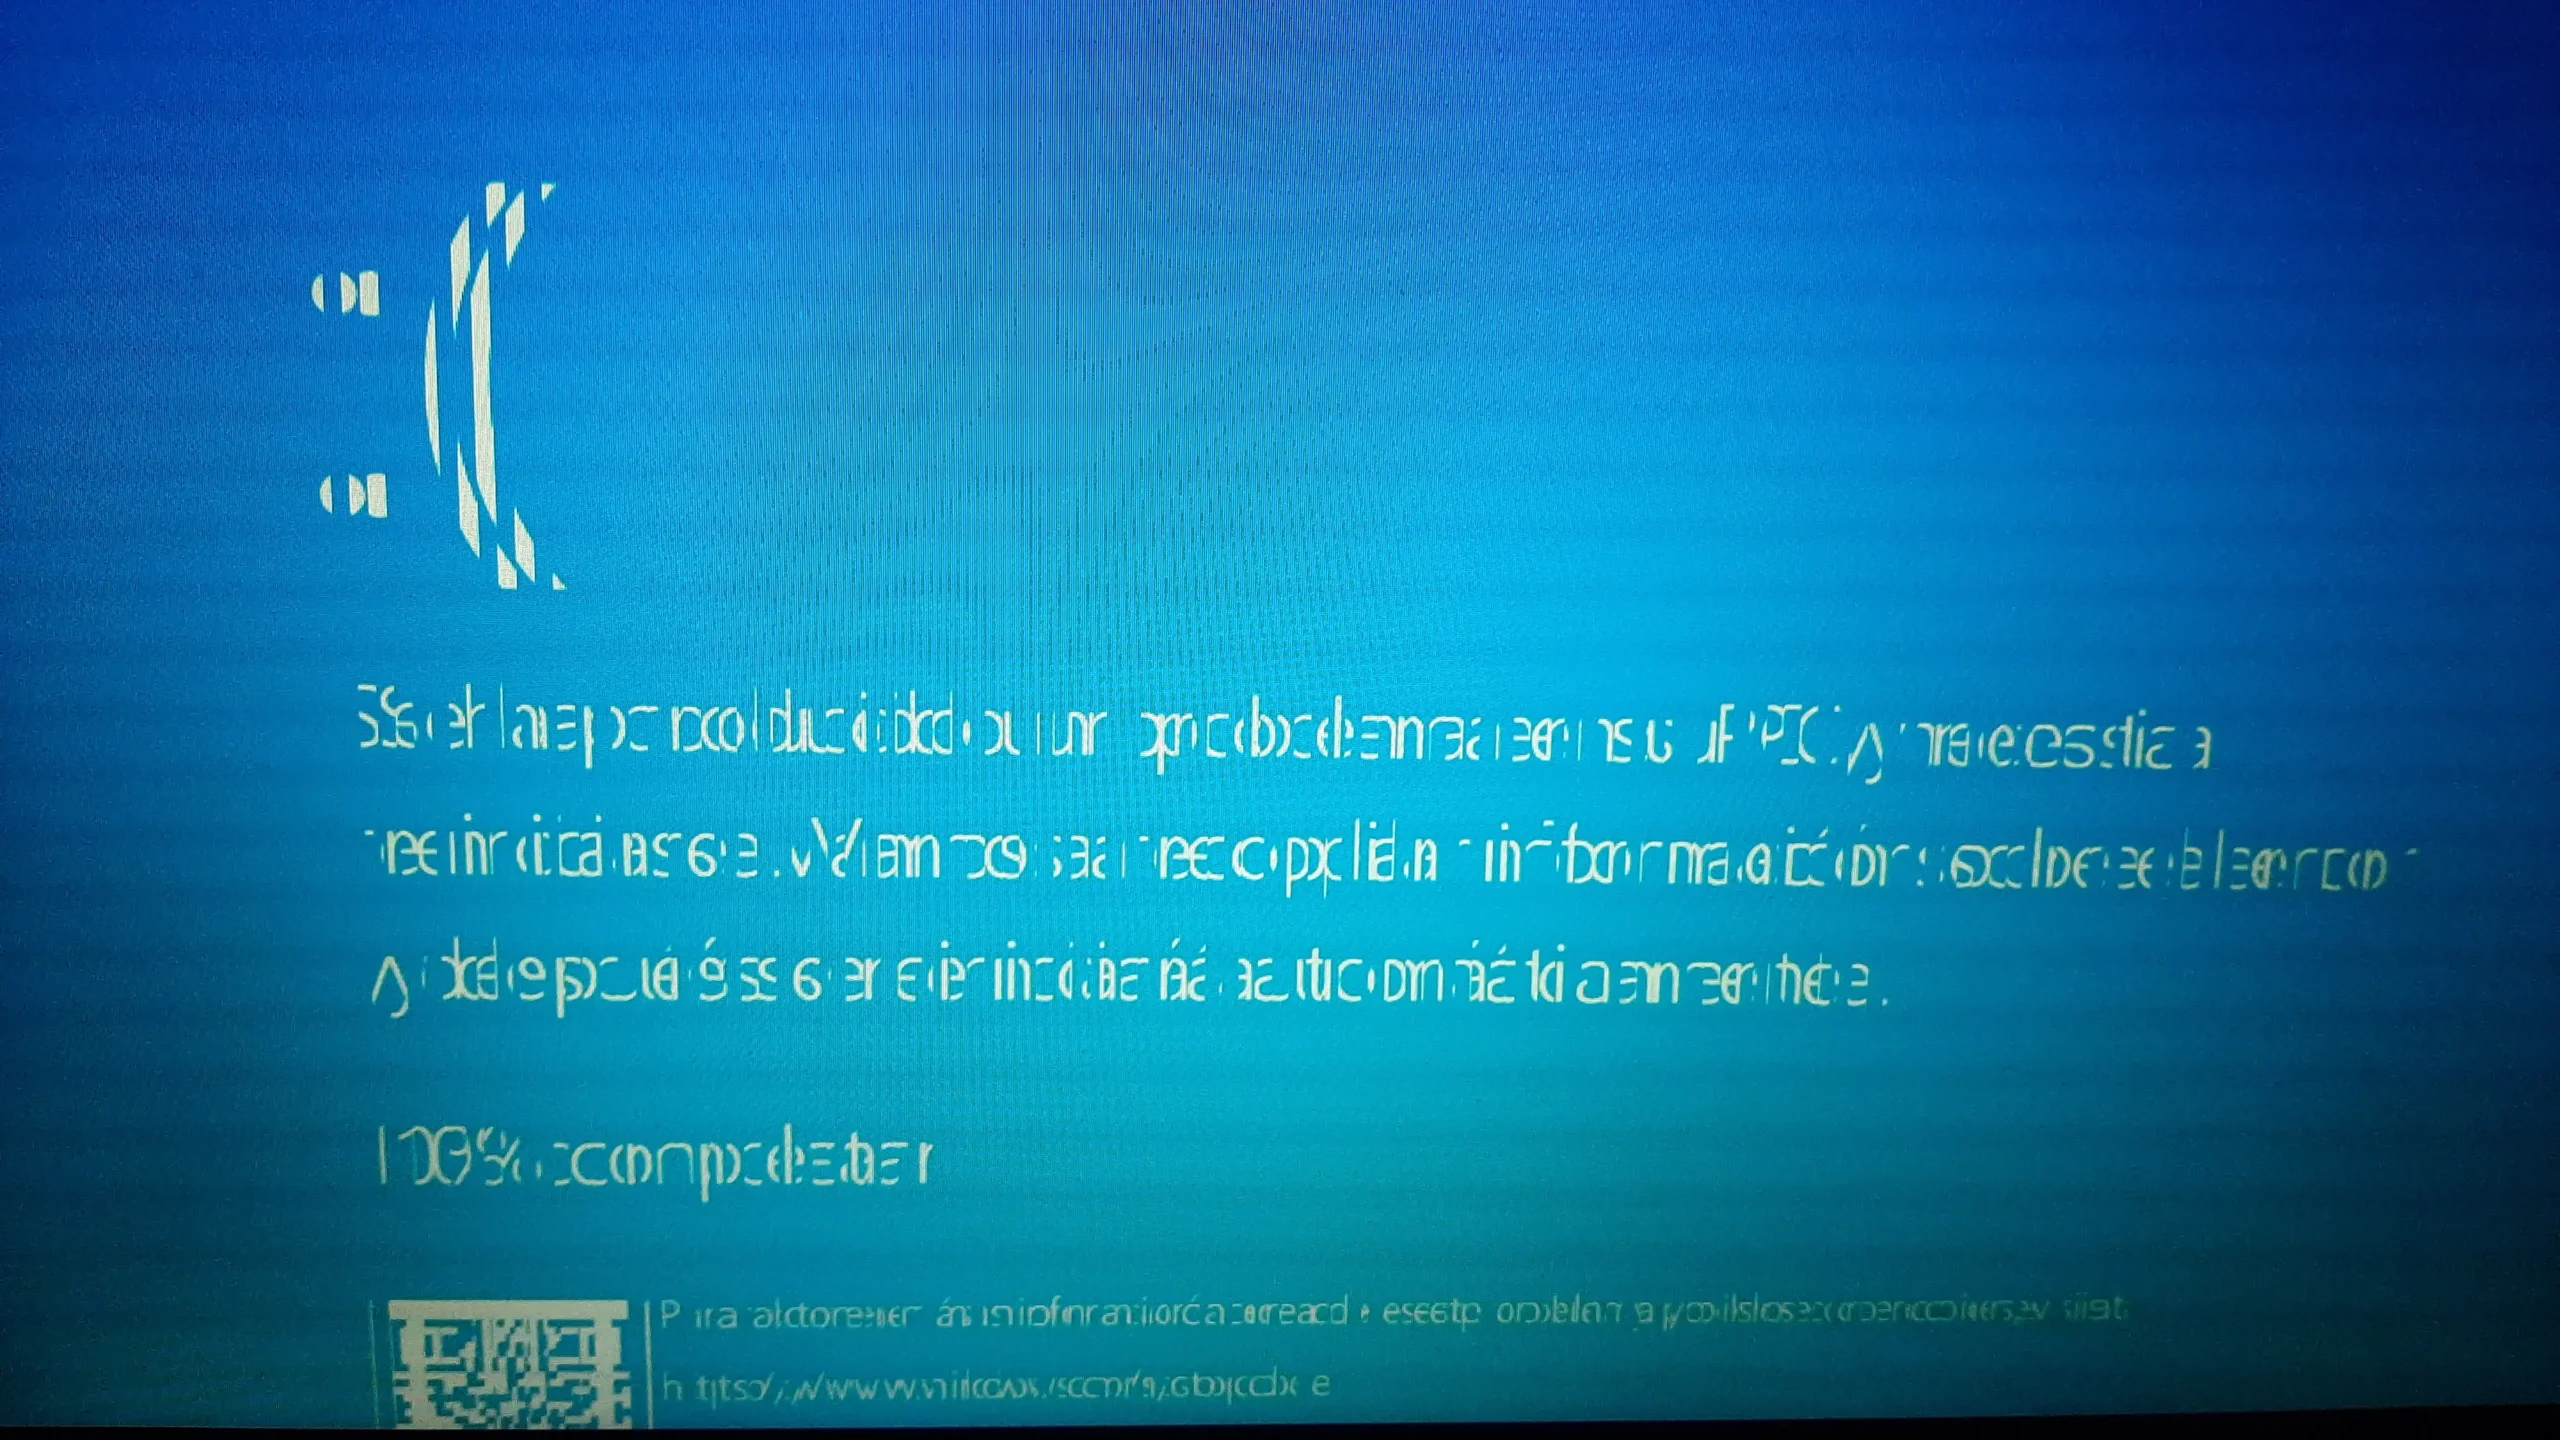 pantalla azul con letras blancas en mi pc - Qué es lo que significa cuando se pone la pantalla azul con letras blancas